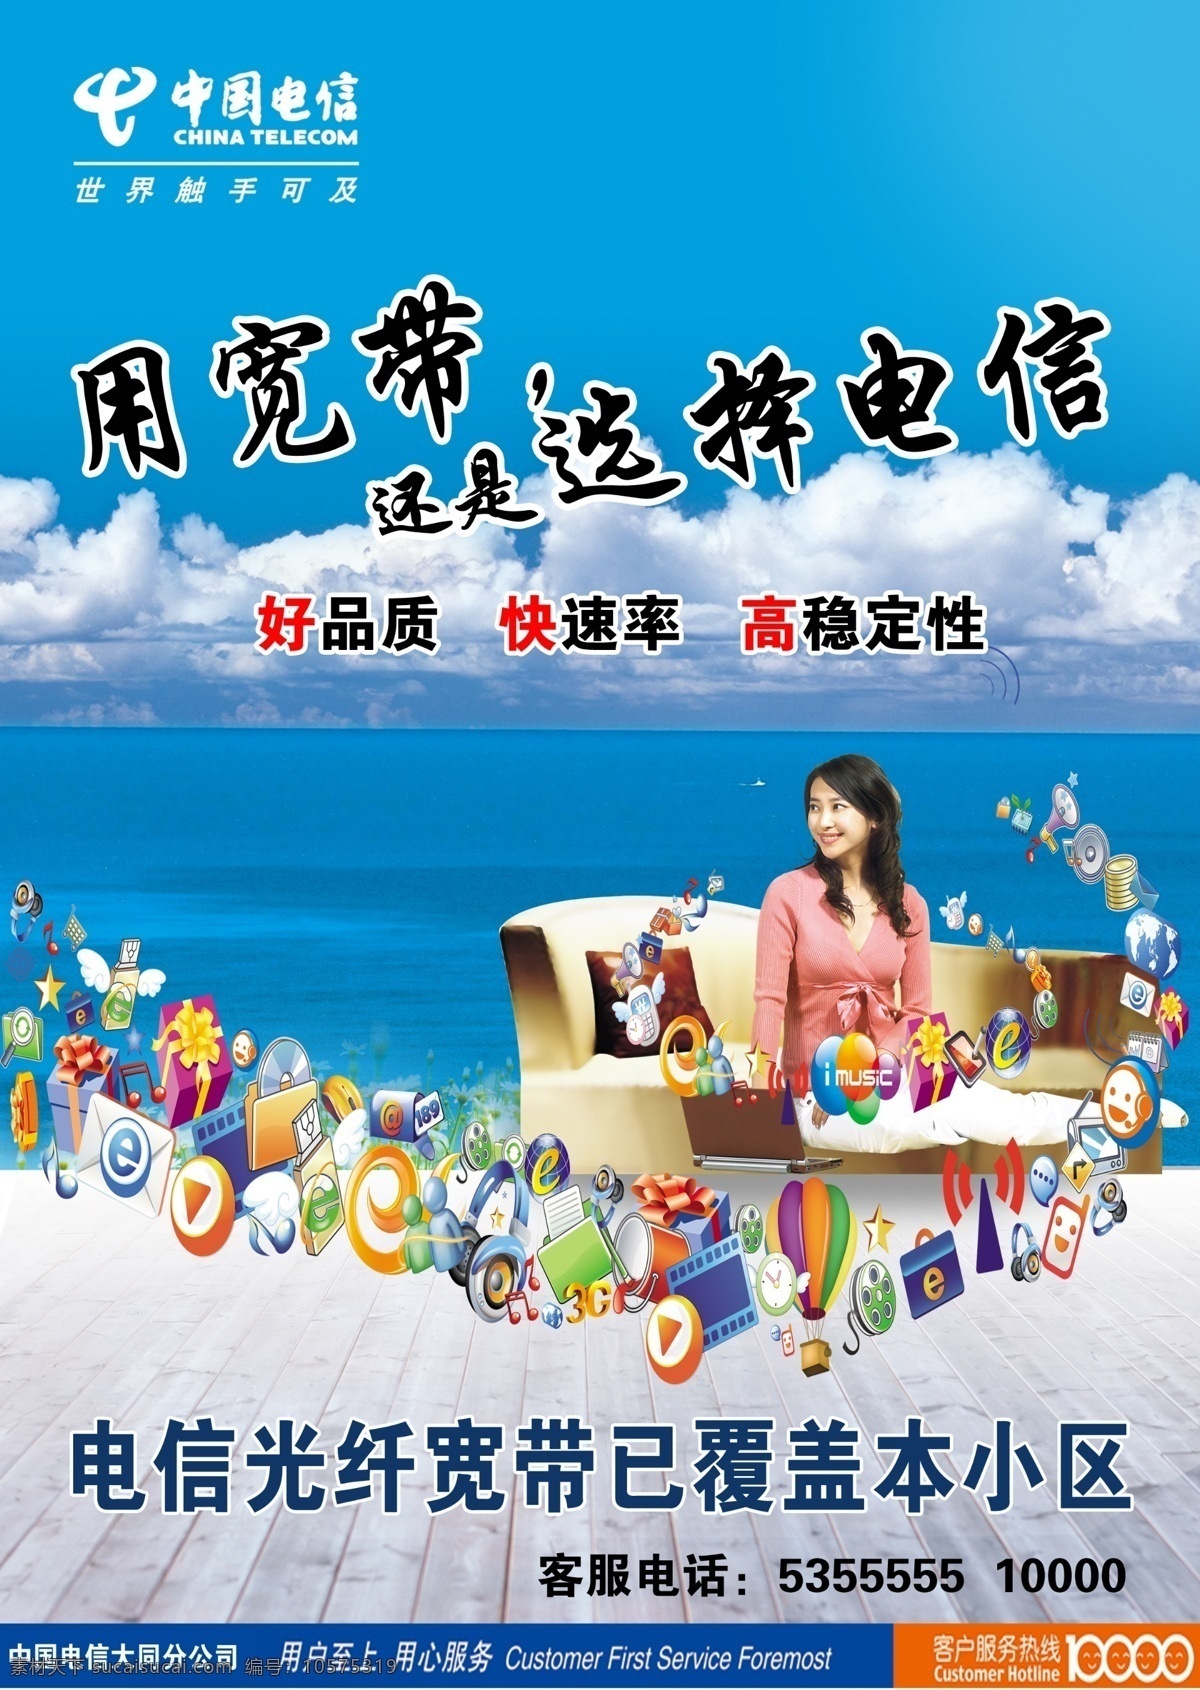 广告设计模板 海 宽带 美女 时尚元素 源文件 云朵 光纤 覆盖 小区 中国电信 选择电信 其他海报设计